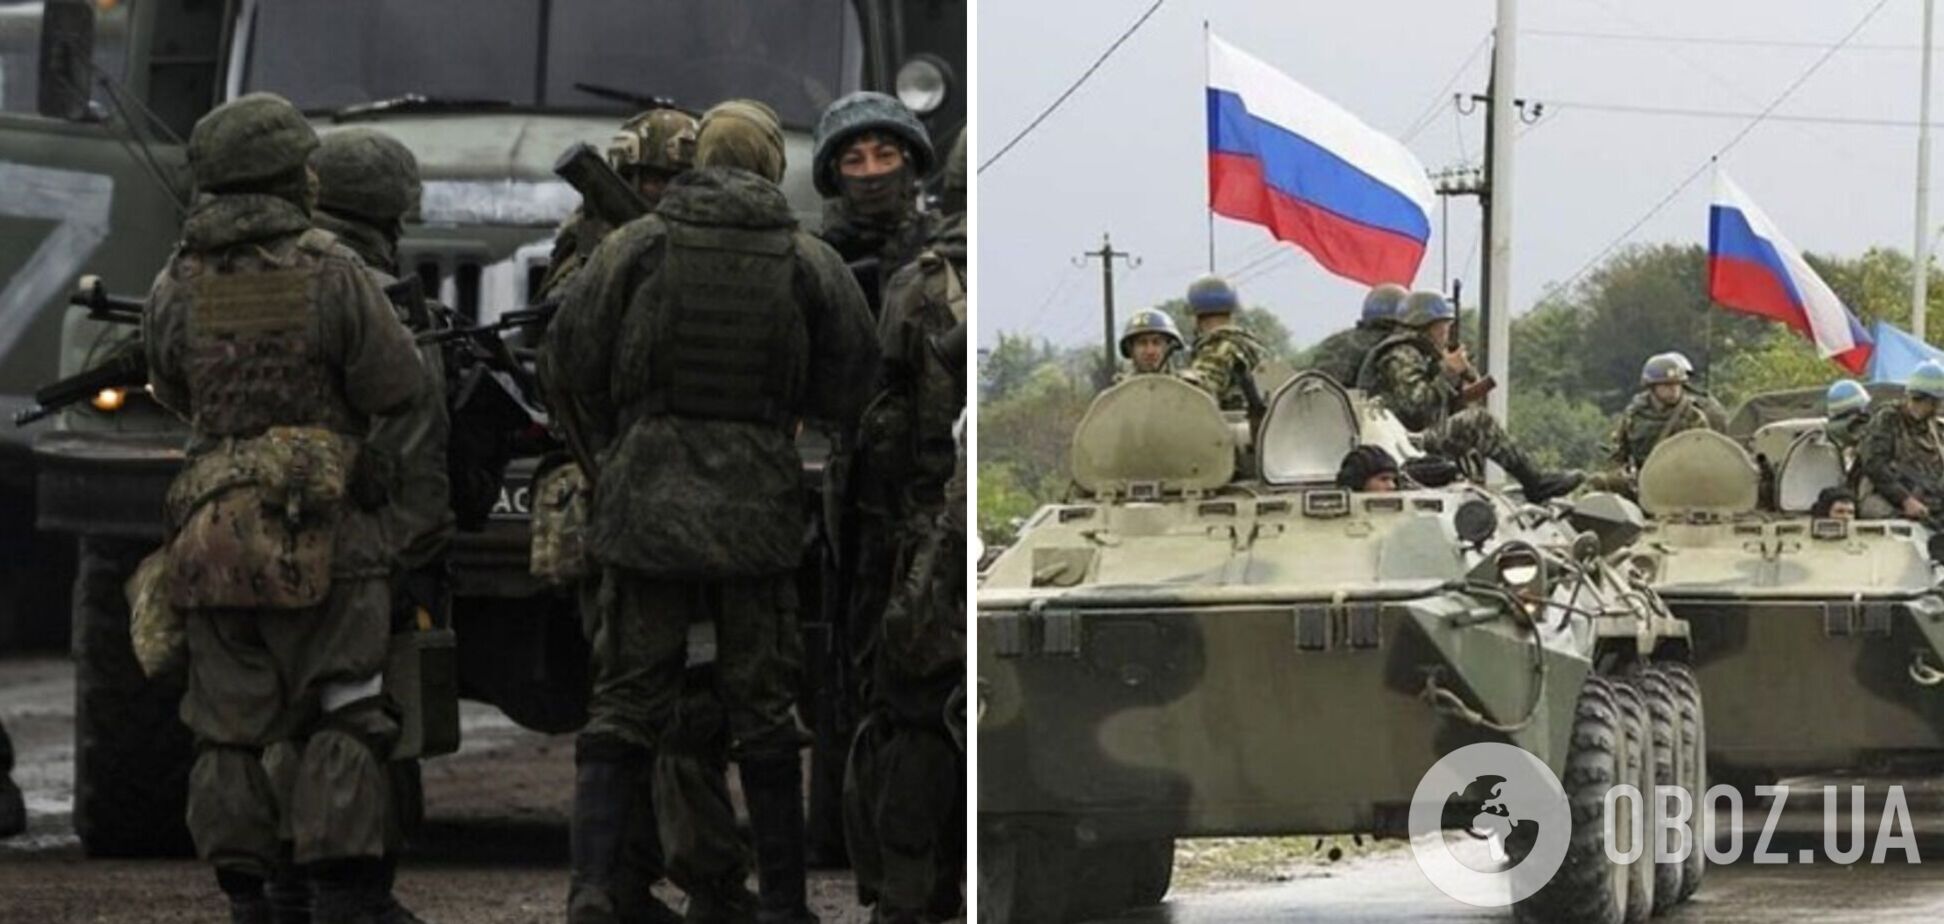 'Для них это стадо': украинский защитник рассказал, как РФ 'утилизирует' свои войска в Украине